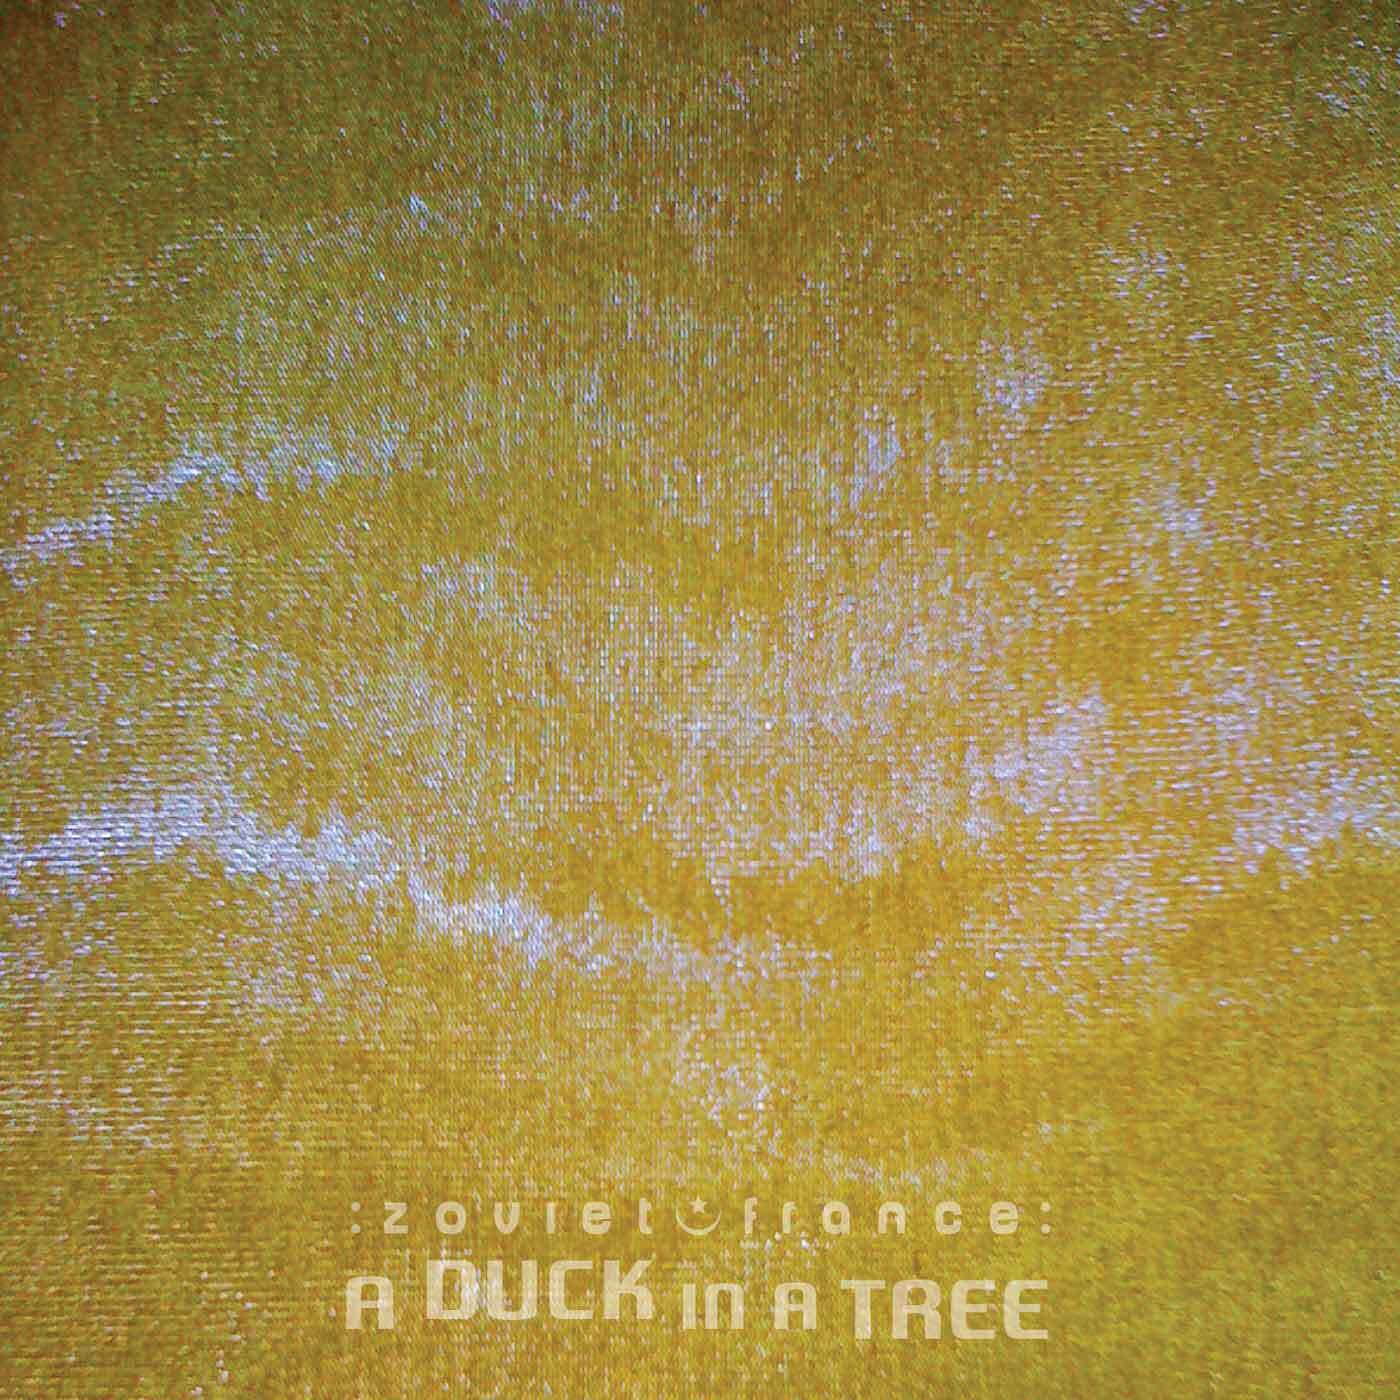 A-Duck-in-a-Tree-2014-12-20-_-The-Algori